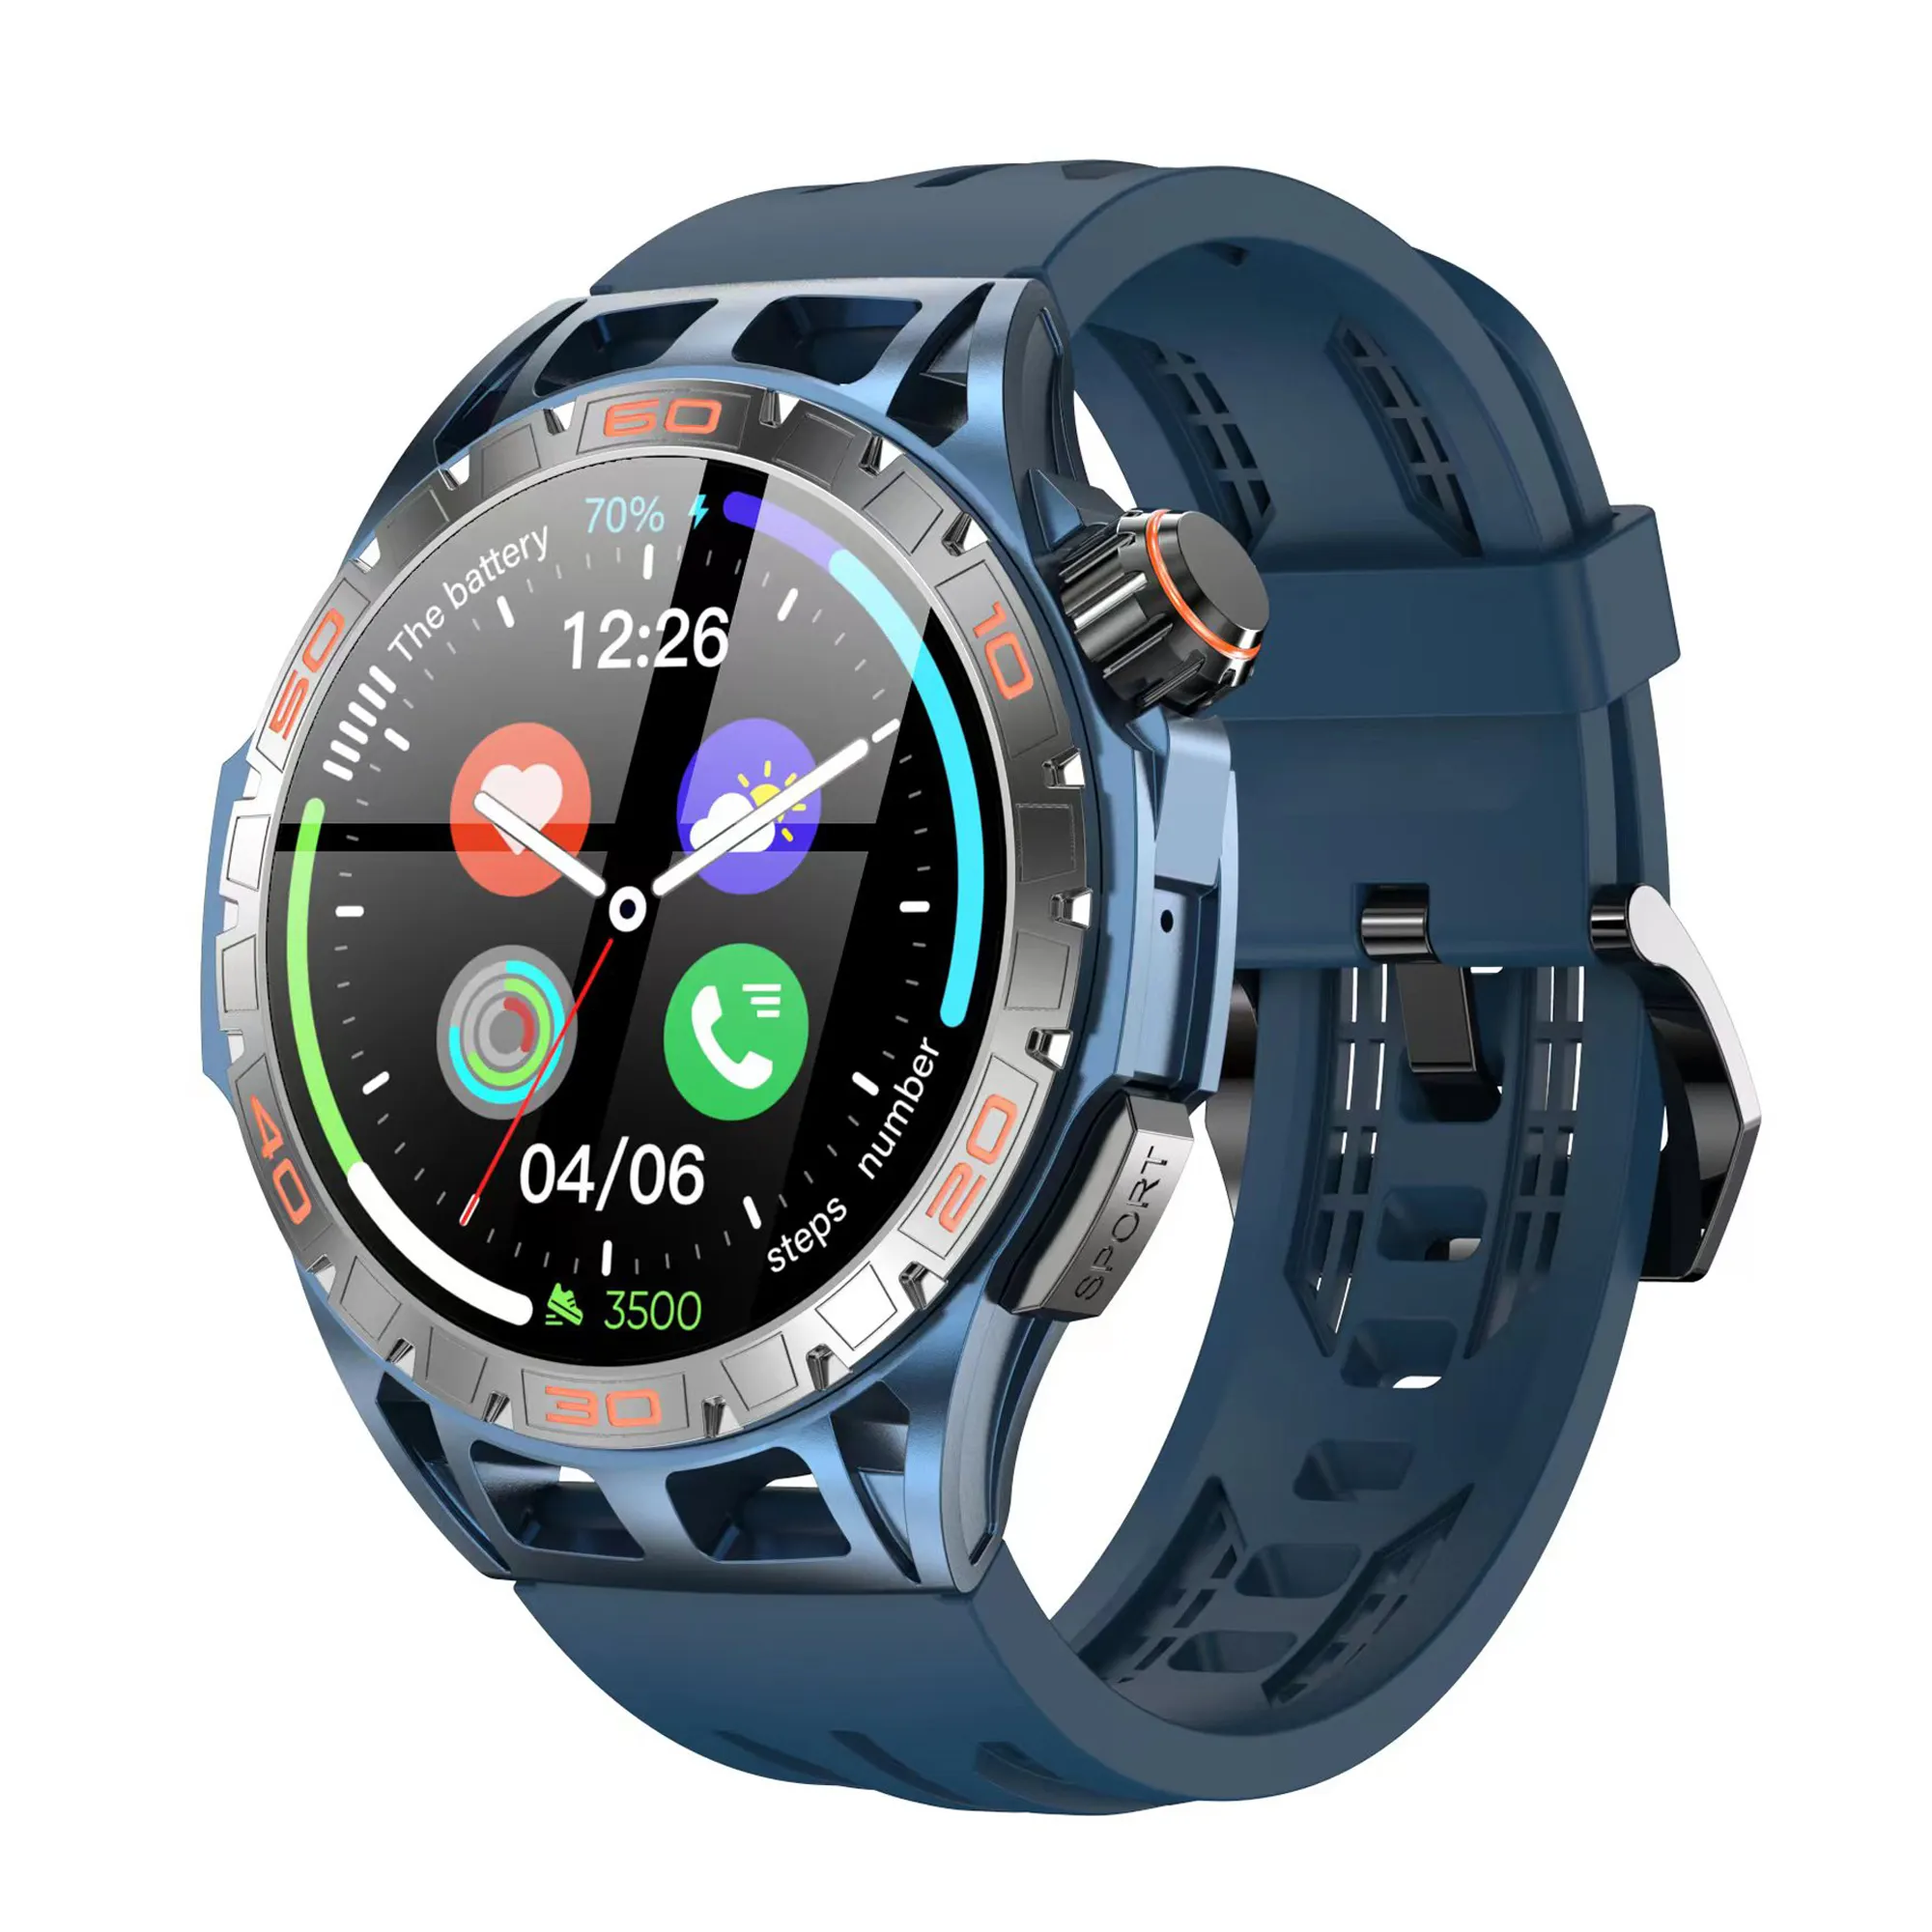 Venda quente ao ar livre estilo relógio inteligente LA102 amoled homens mulheres smartwatch esporte relógio inteligente tela redonda